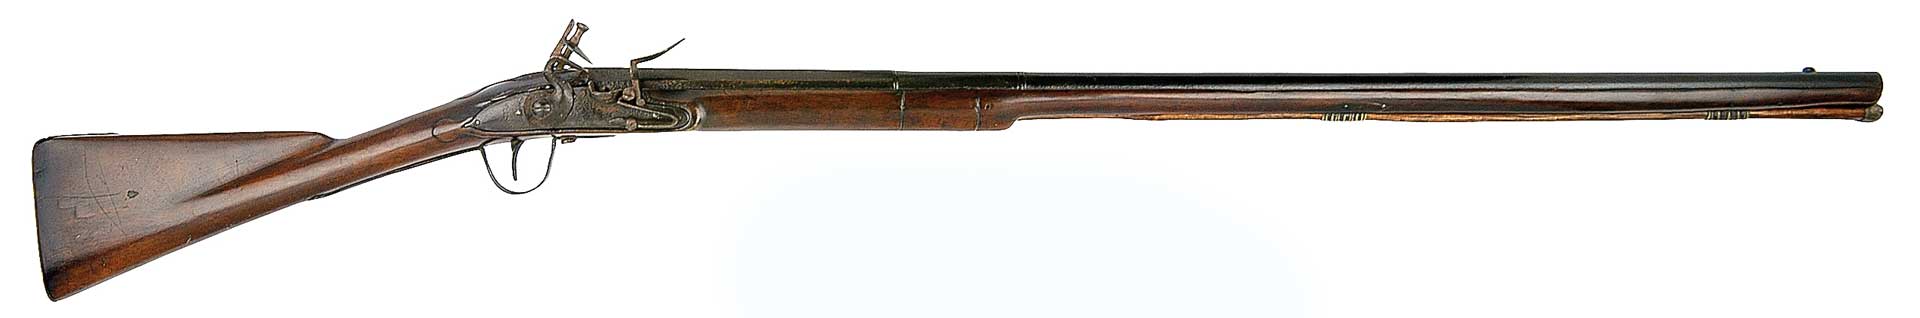 right side colonial era gun hunting metal wood brown steel